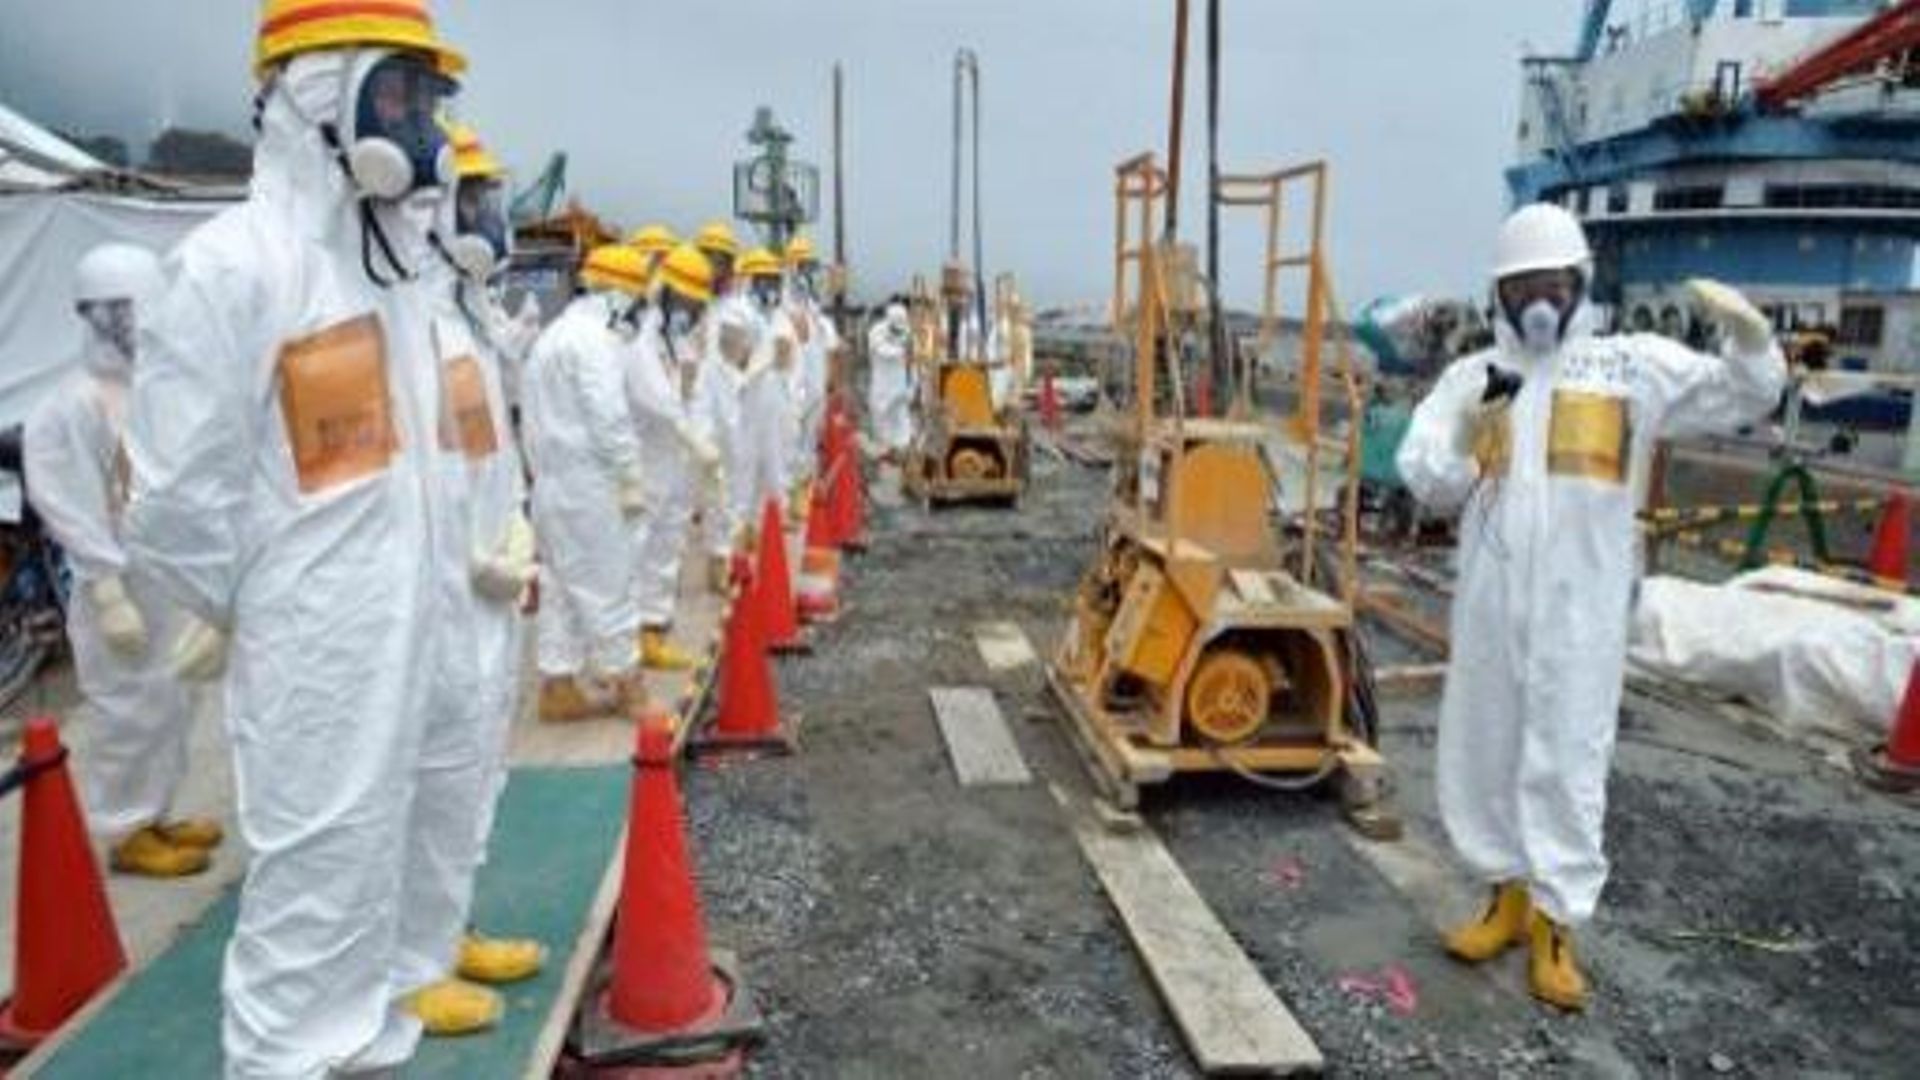 fukushima-probleme-urgent-avec-l-eau-contaminee-gouvernement